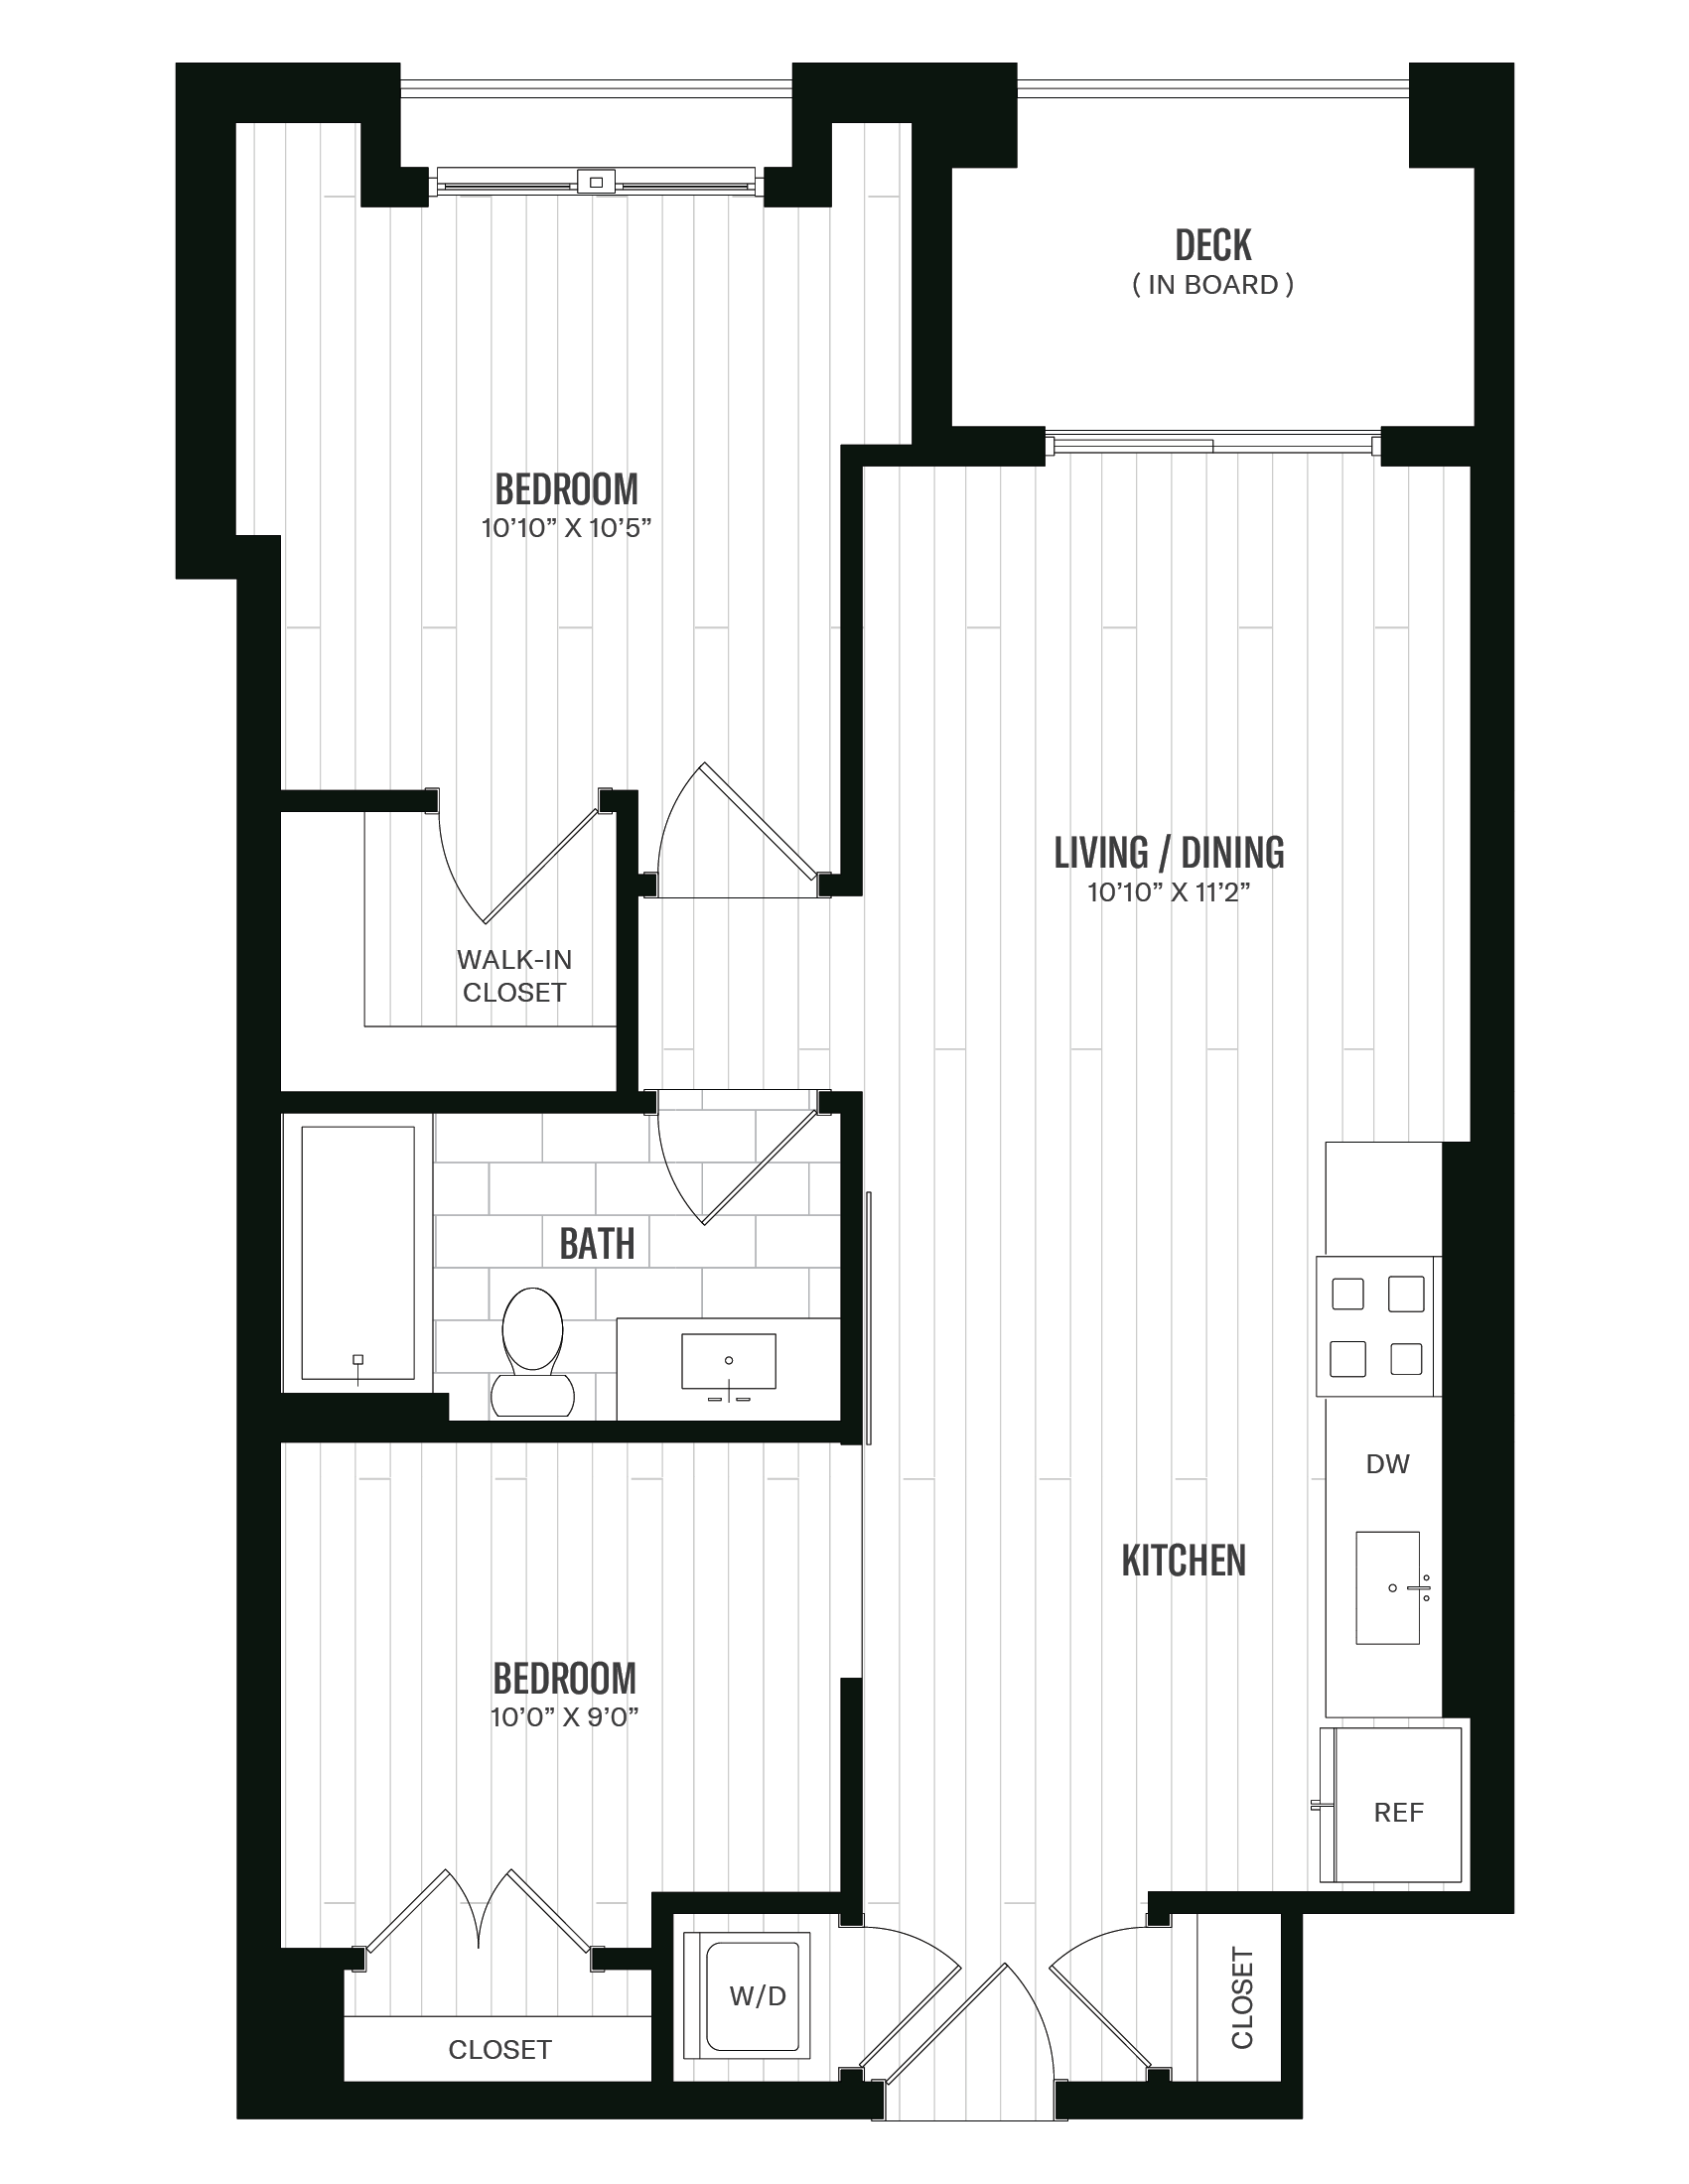 Floorplan image of unit 546